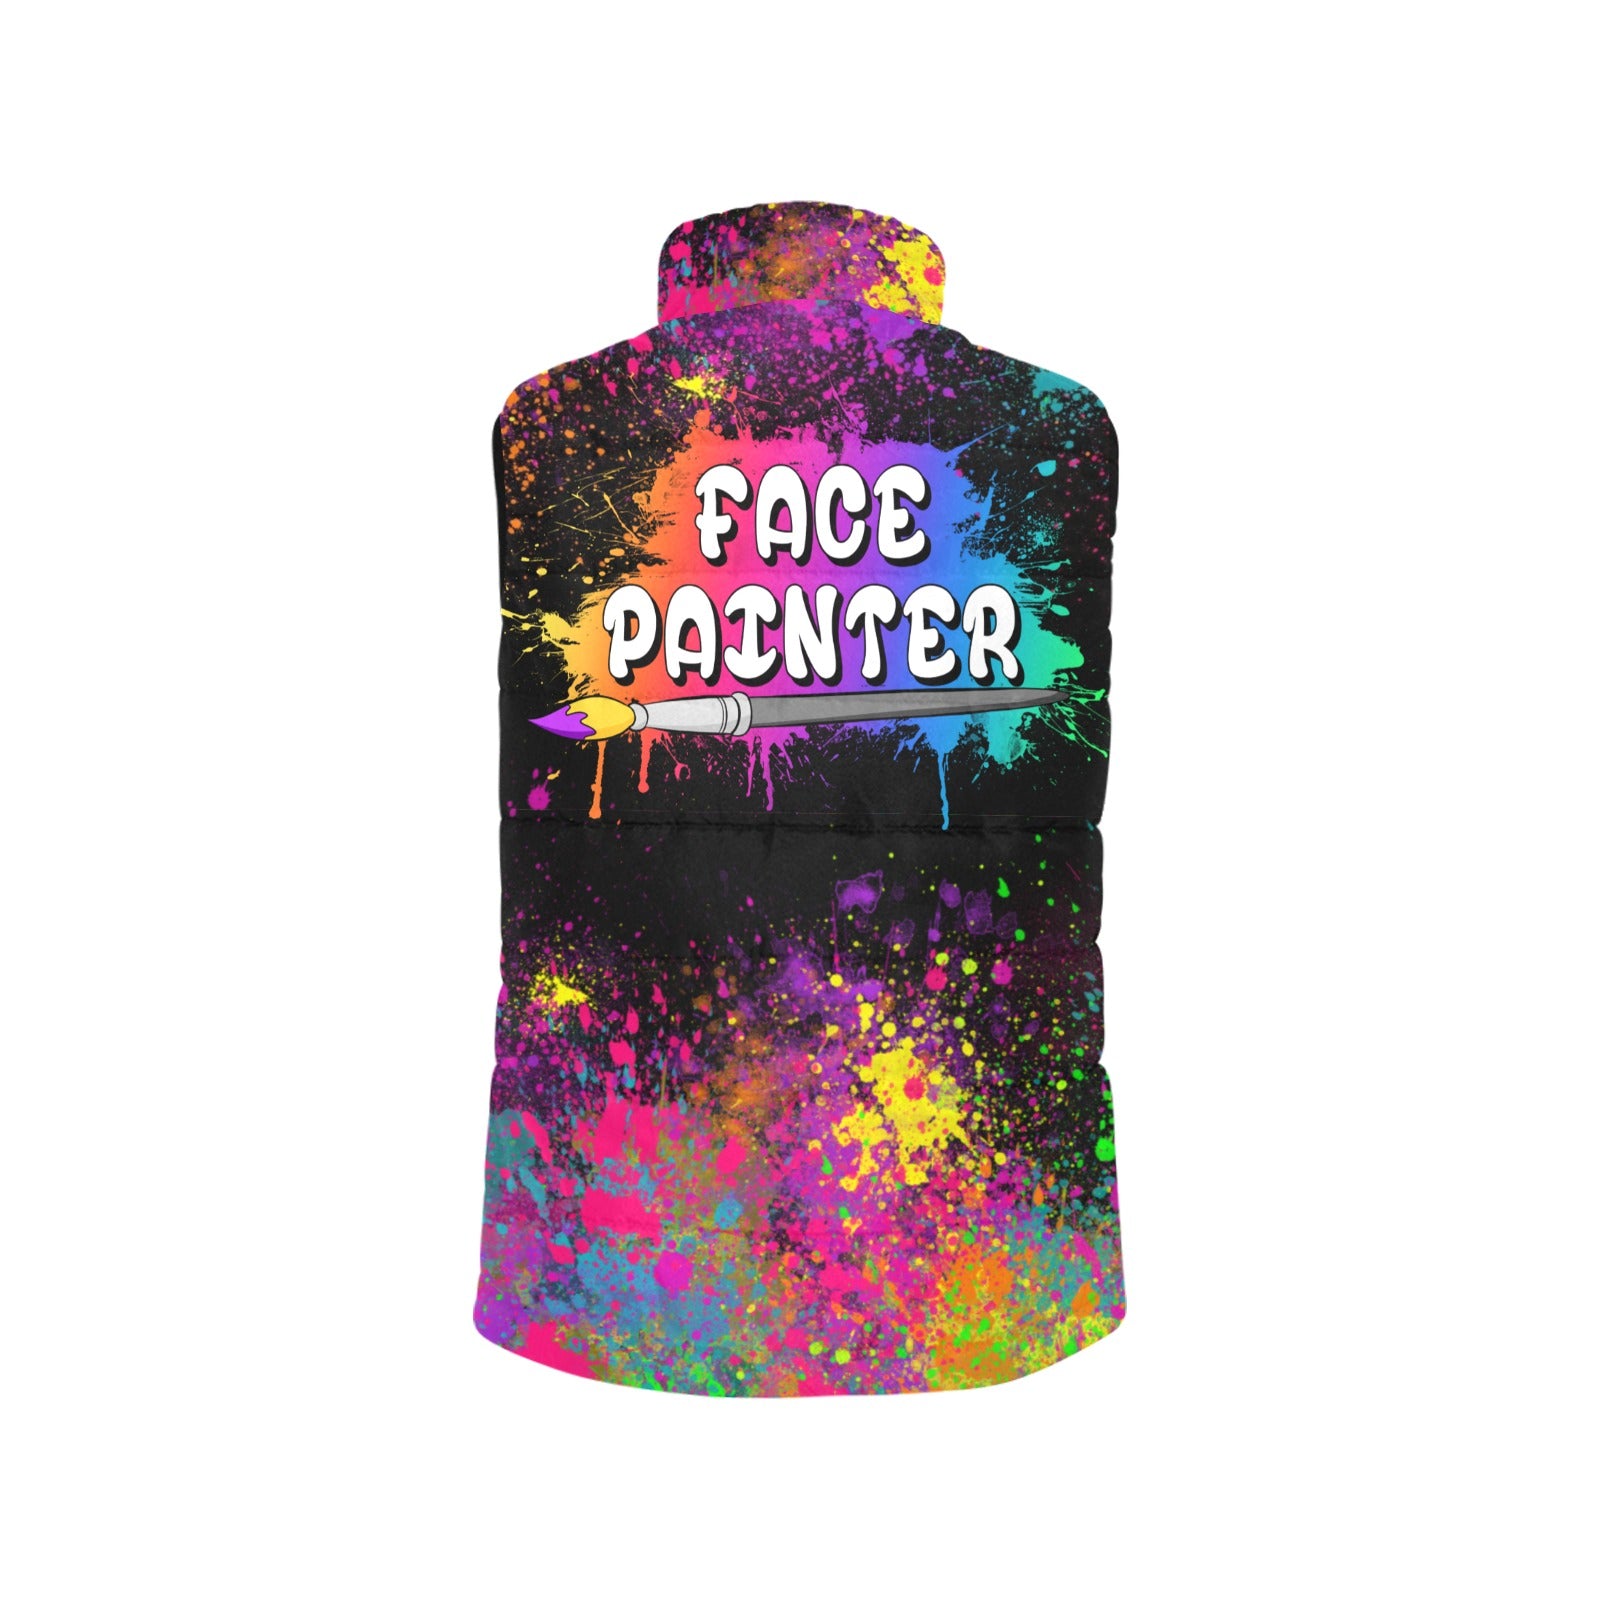 Professional Face Painter Vest with paint splatter design 